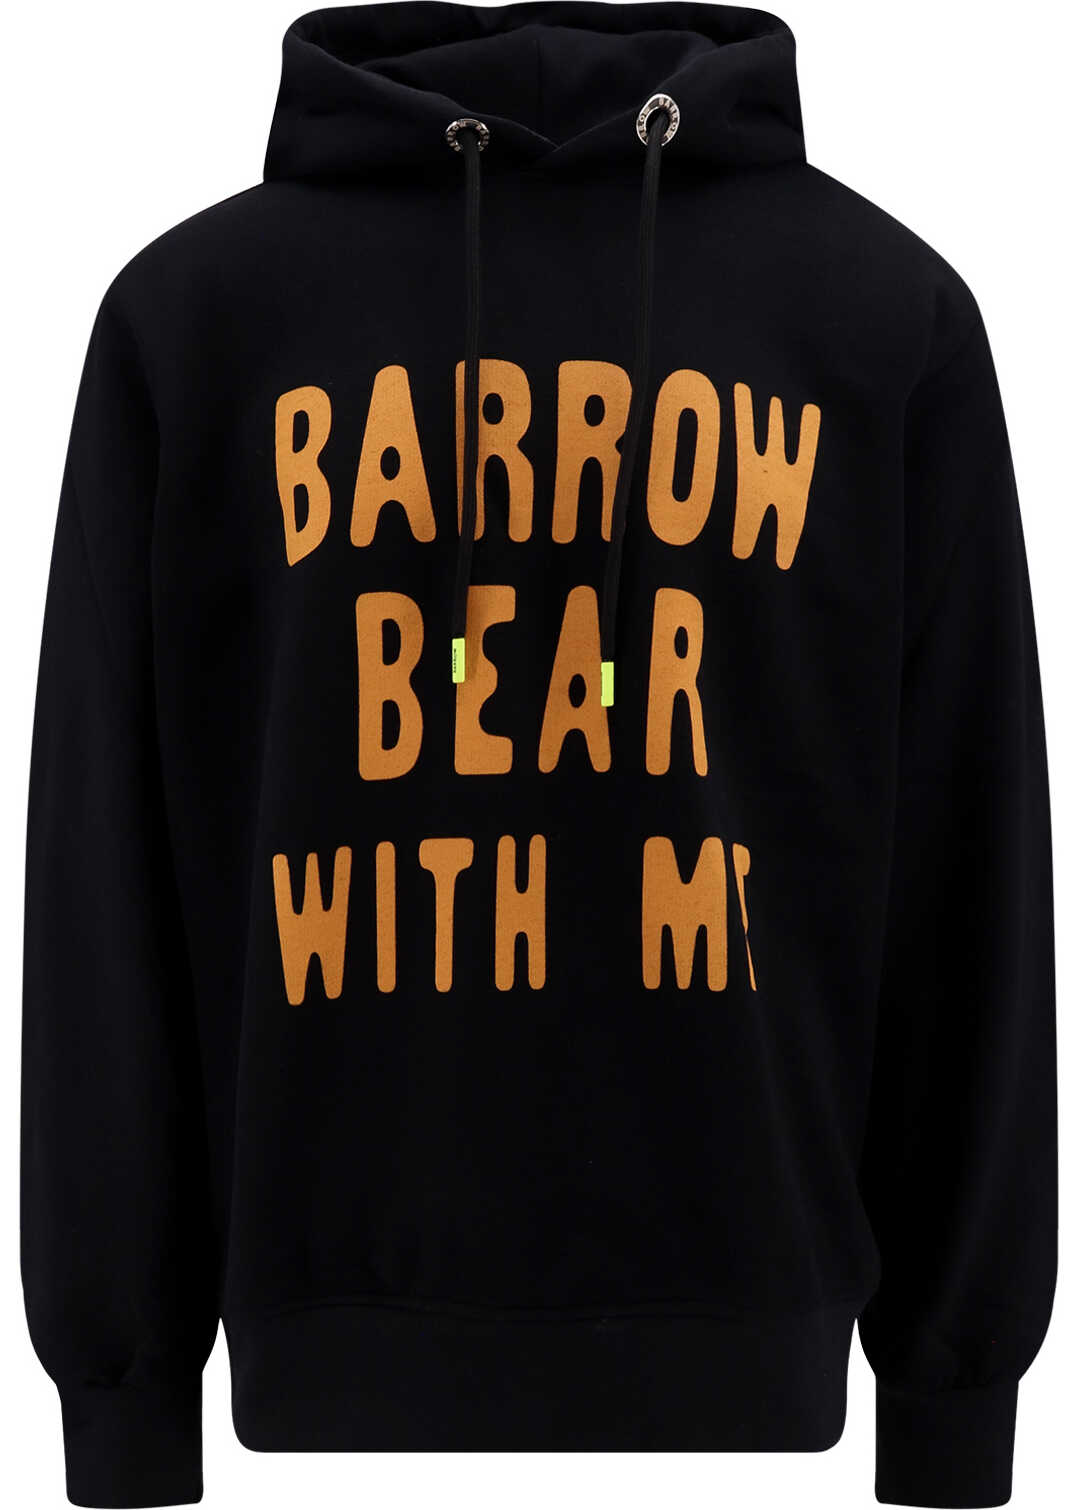 BARROW Sweatshirt Black